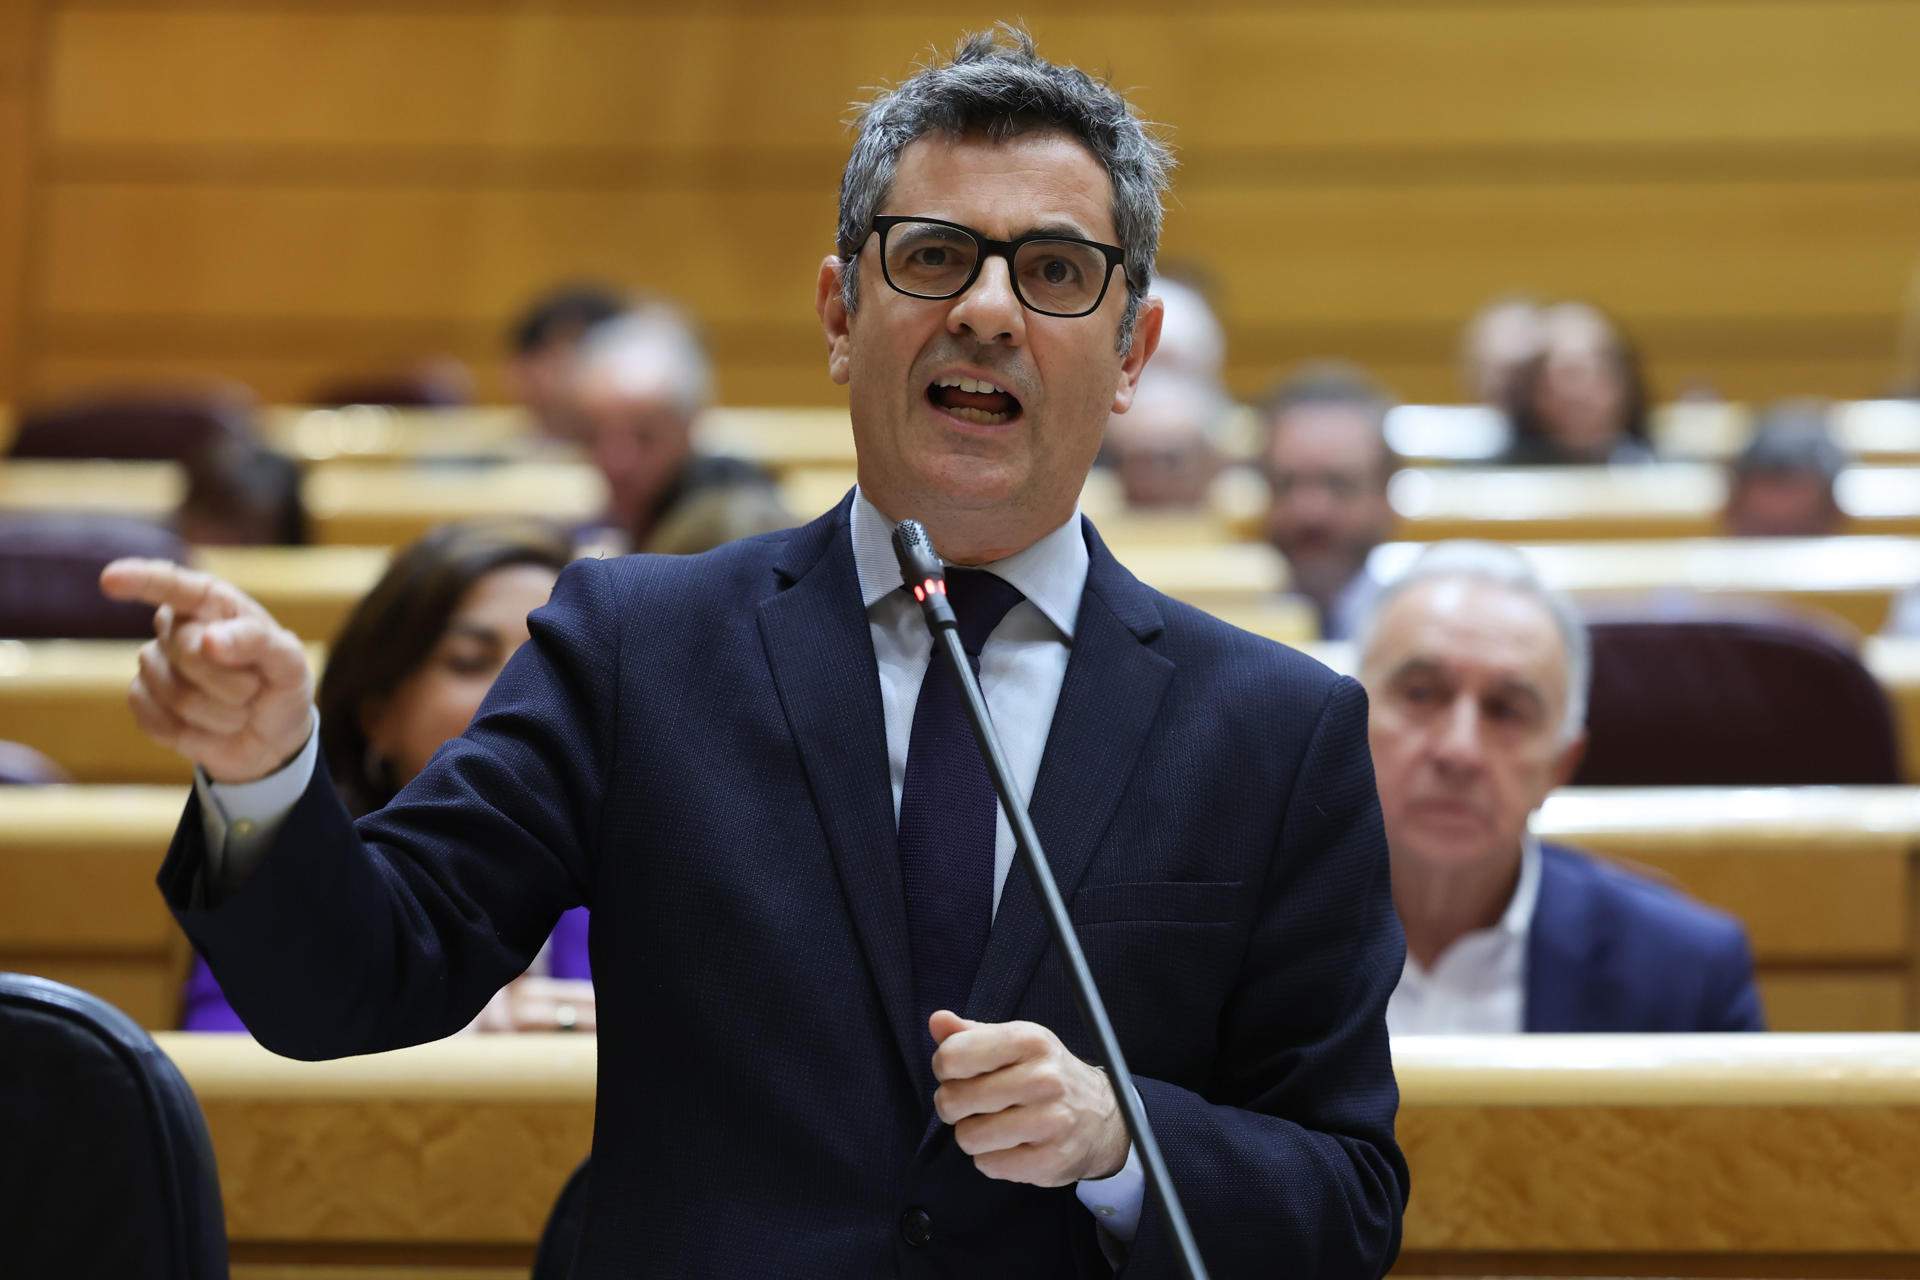 Bolaños s’oposa al referèndum però alhora convida ERC a una “solució pactada del conflicte”